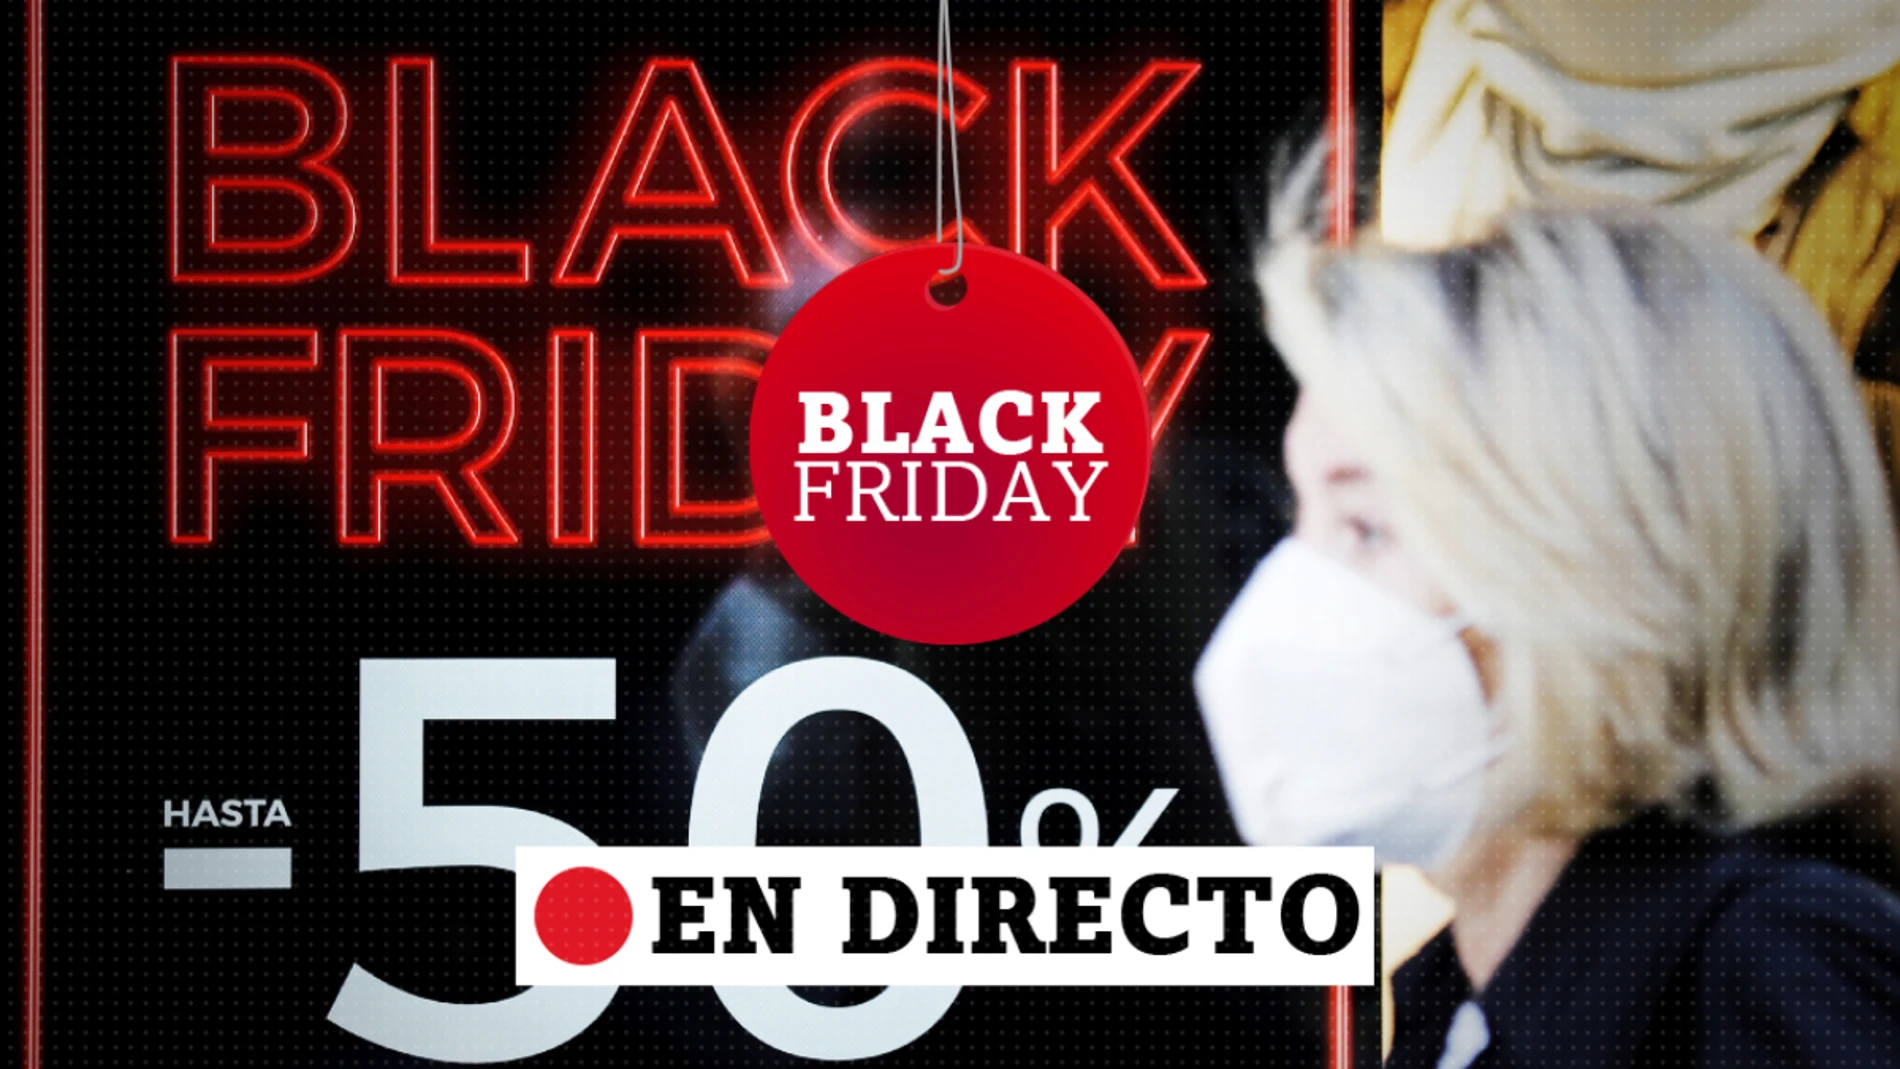 Super ofertas del Black Friday 2020 en Amazon, descuentos del 40%, 50% y más allá del 60%, en directo